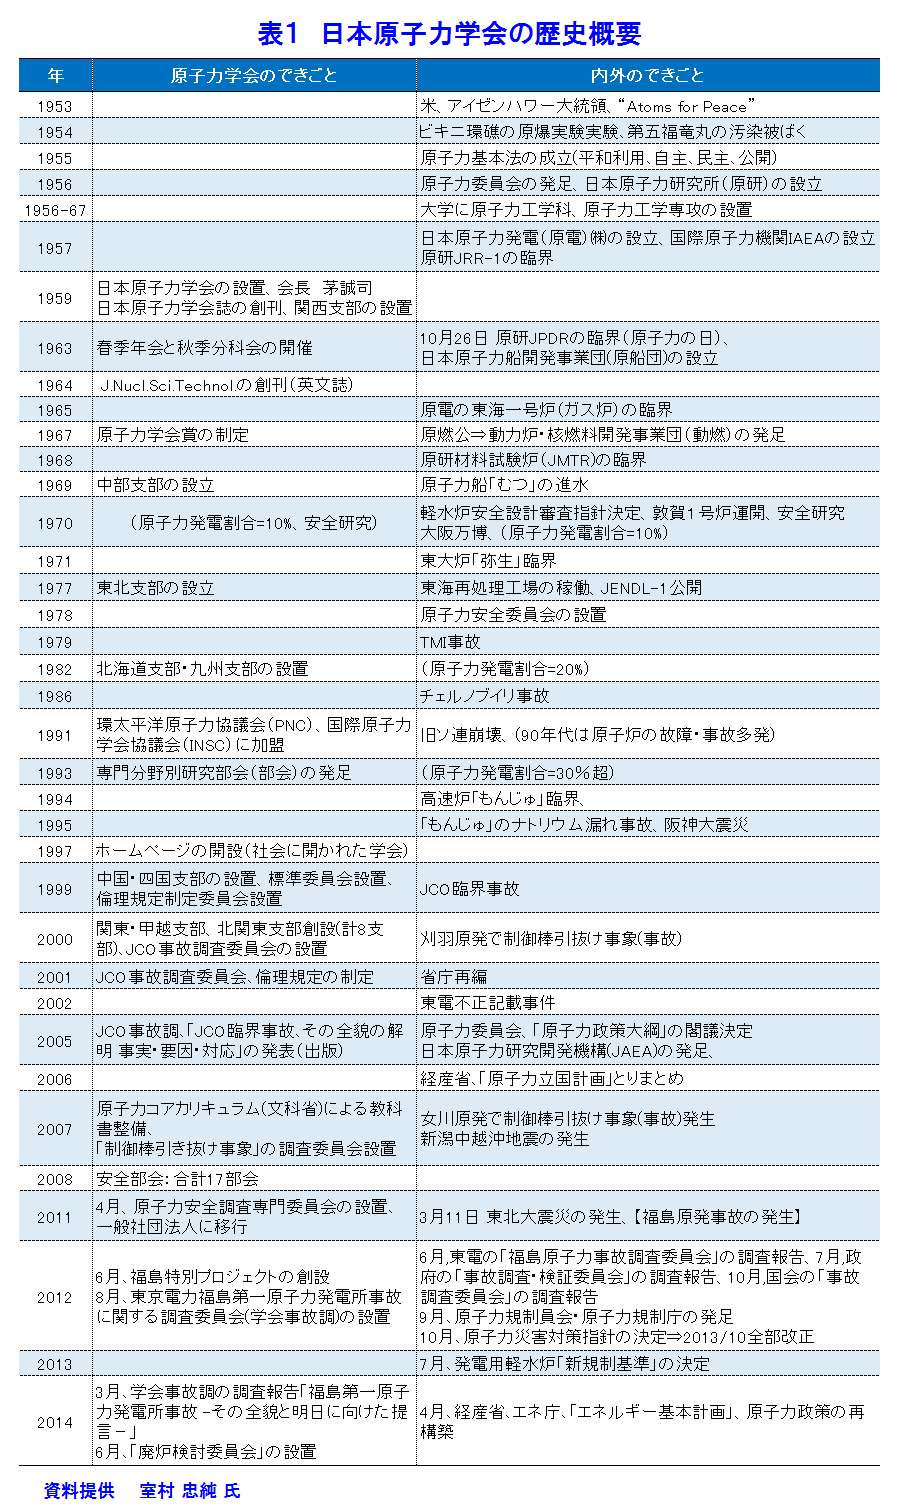 表１  日本原子力学会の歴史概要